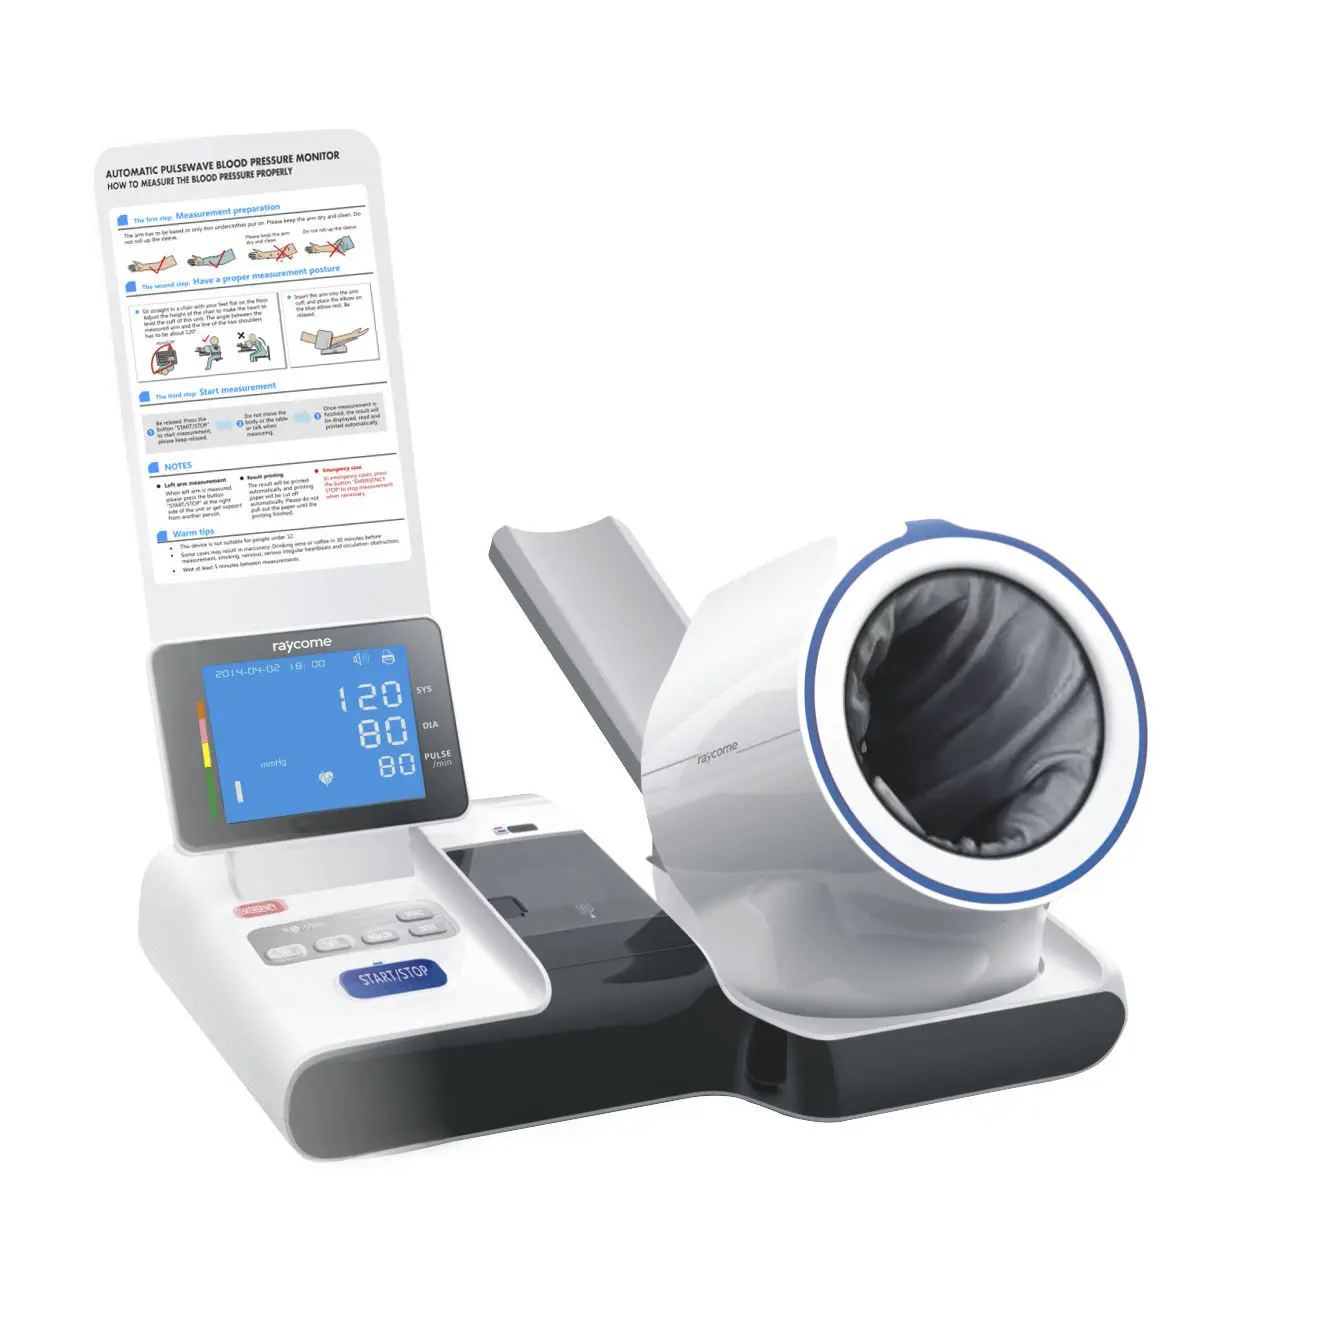 เครื่องวัดความดันโลหิตแบบสอดแขนพร้อมระบบเชื่อมต่อฐานข้อมูลโรงพยาบาล Automatic blood pressure monitor RBP-900